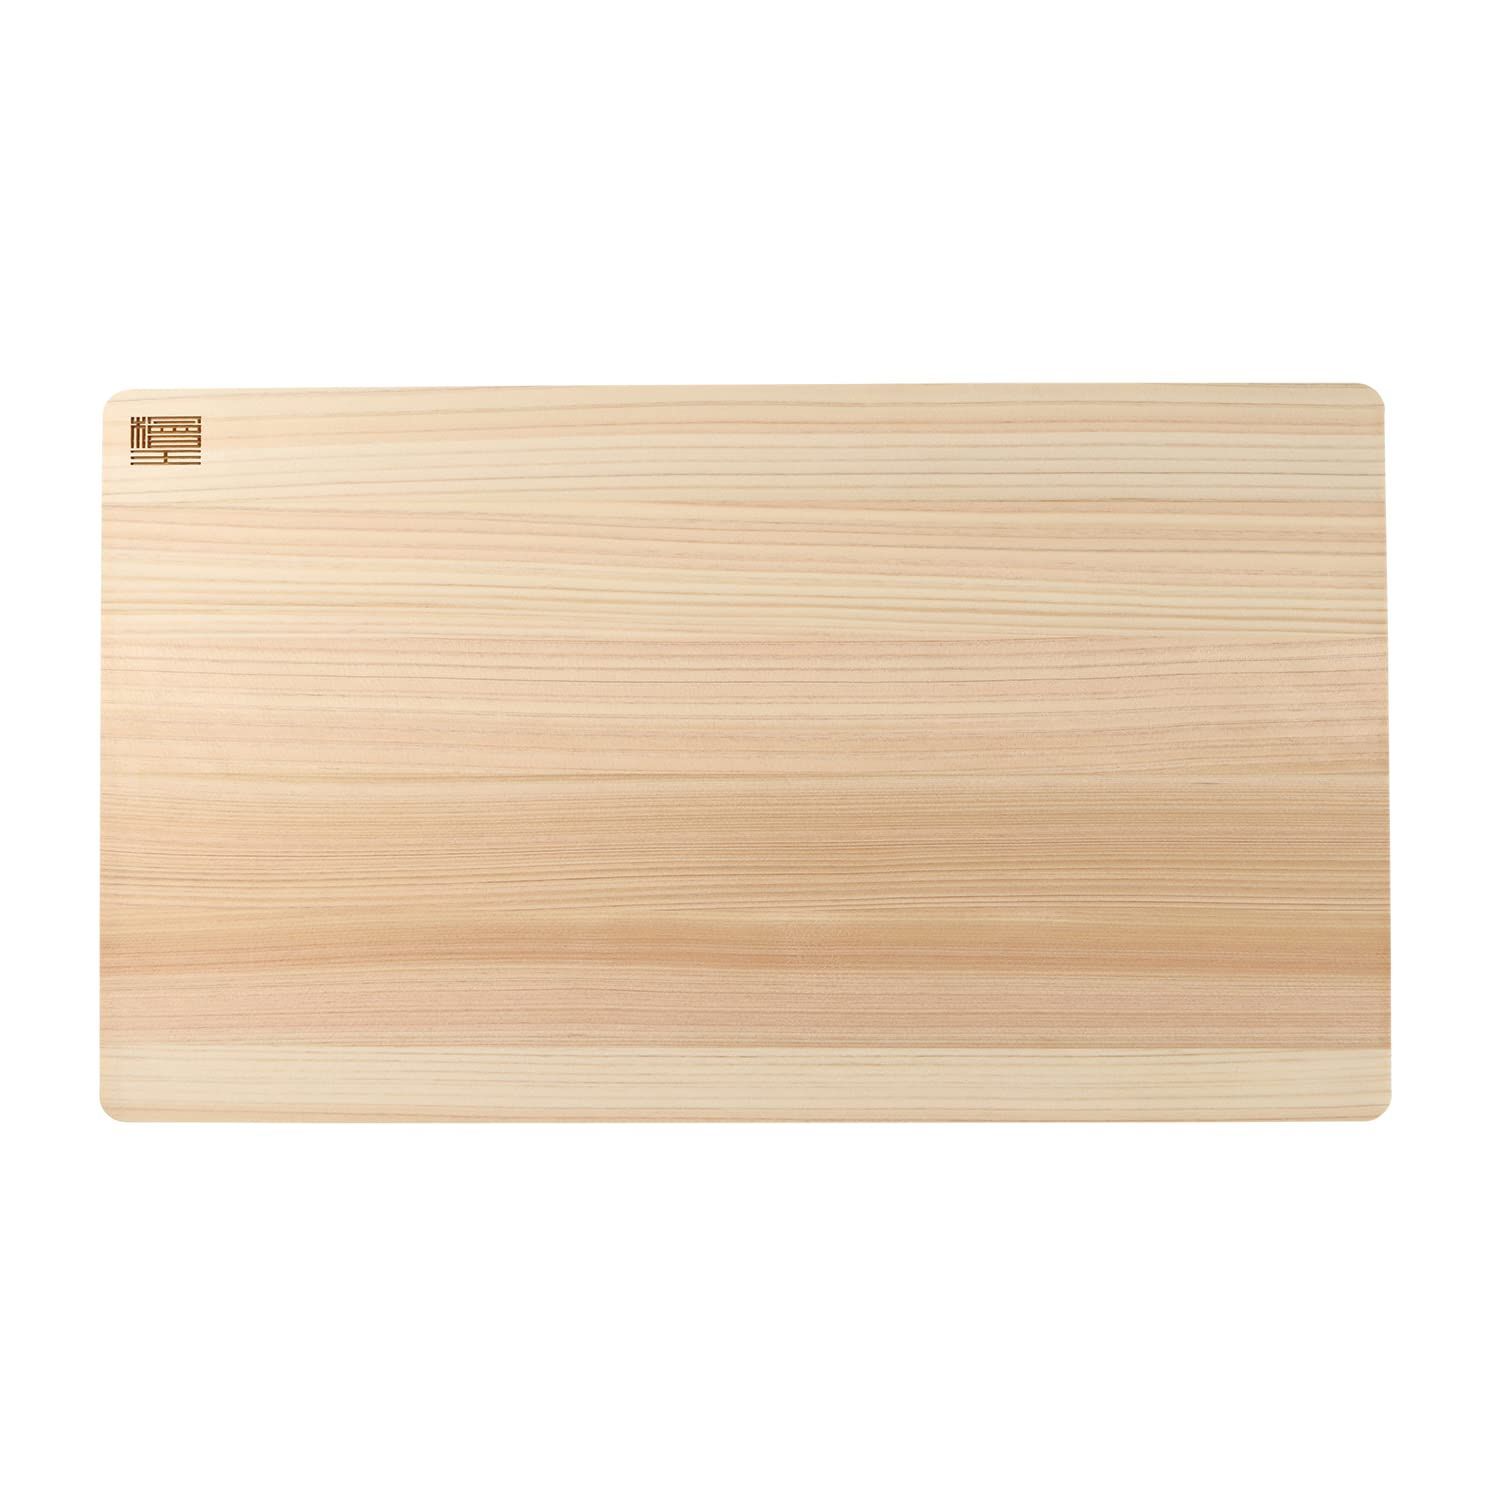 【特価セール】大きなサイズの ひのき 日本製 まな板 45ｃｍ 【檜王】 45×